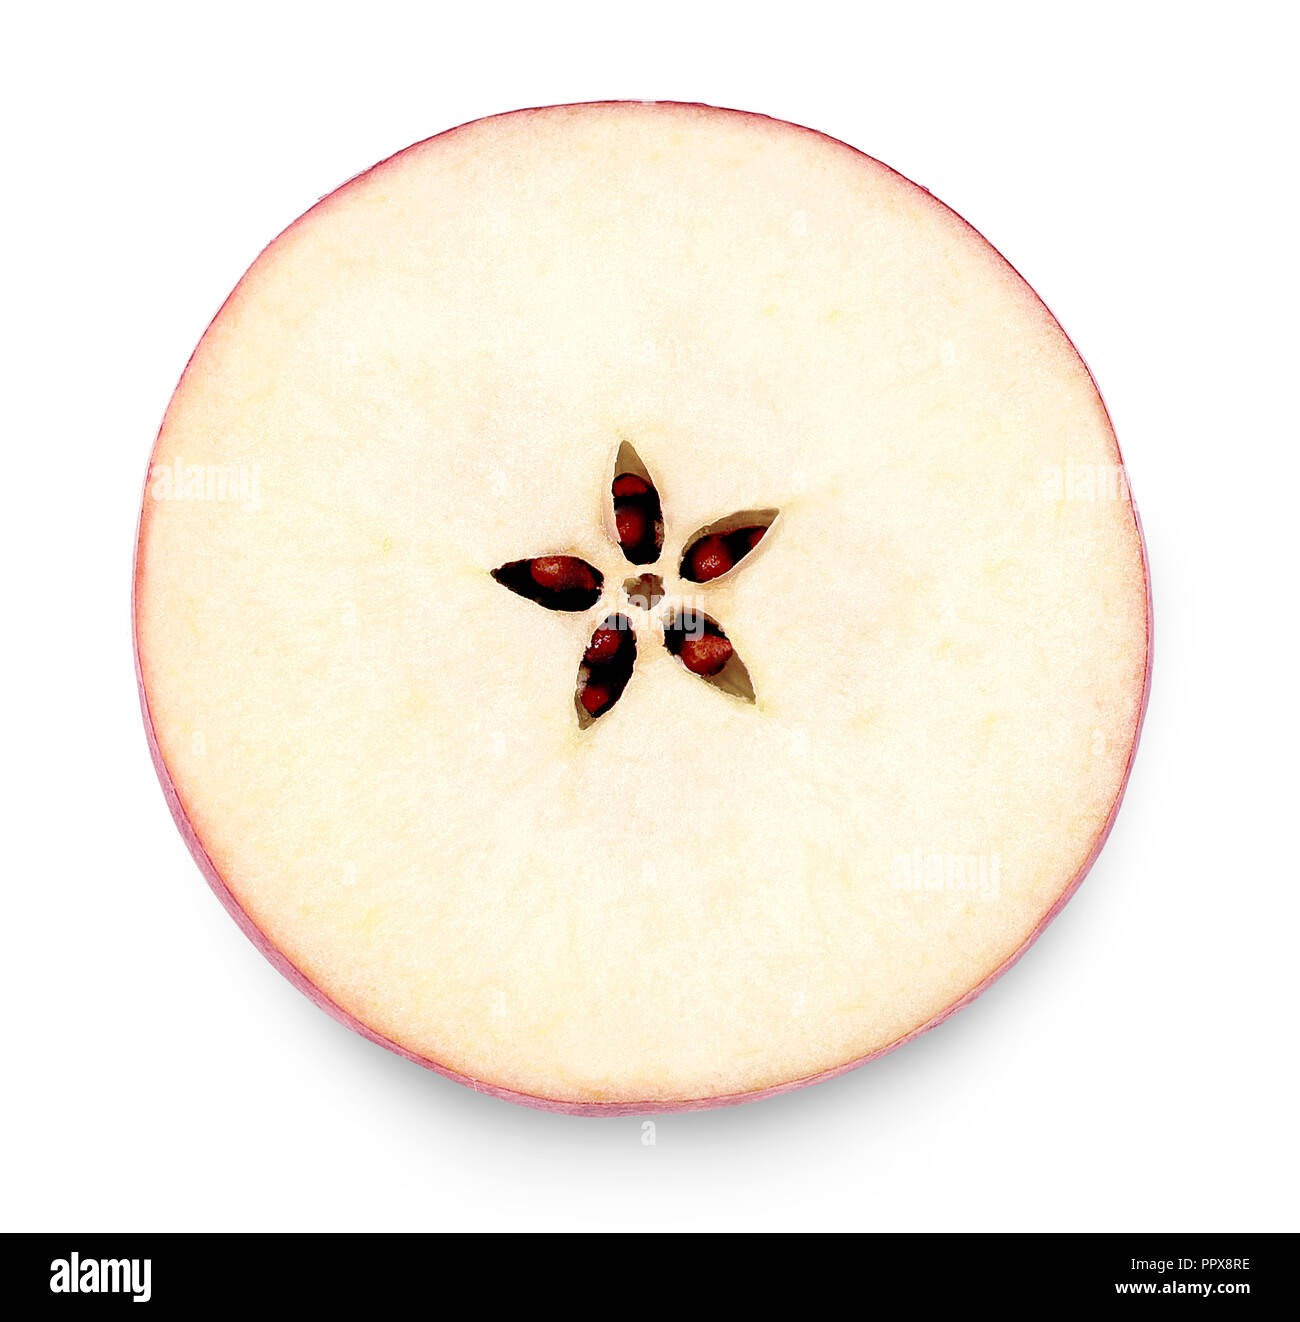 Apple Element oder Teil eines cut Apple. Ansicht von oben, Querschnitt durch einen roten Apfel, auf weißem Hintergrund. Stockfoto